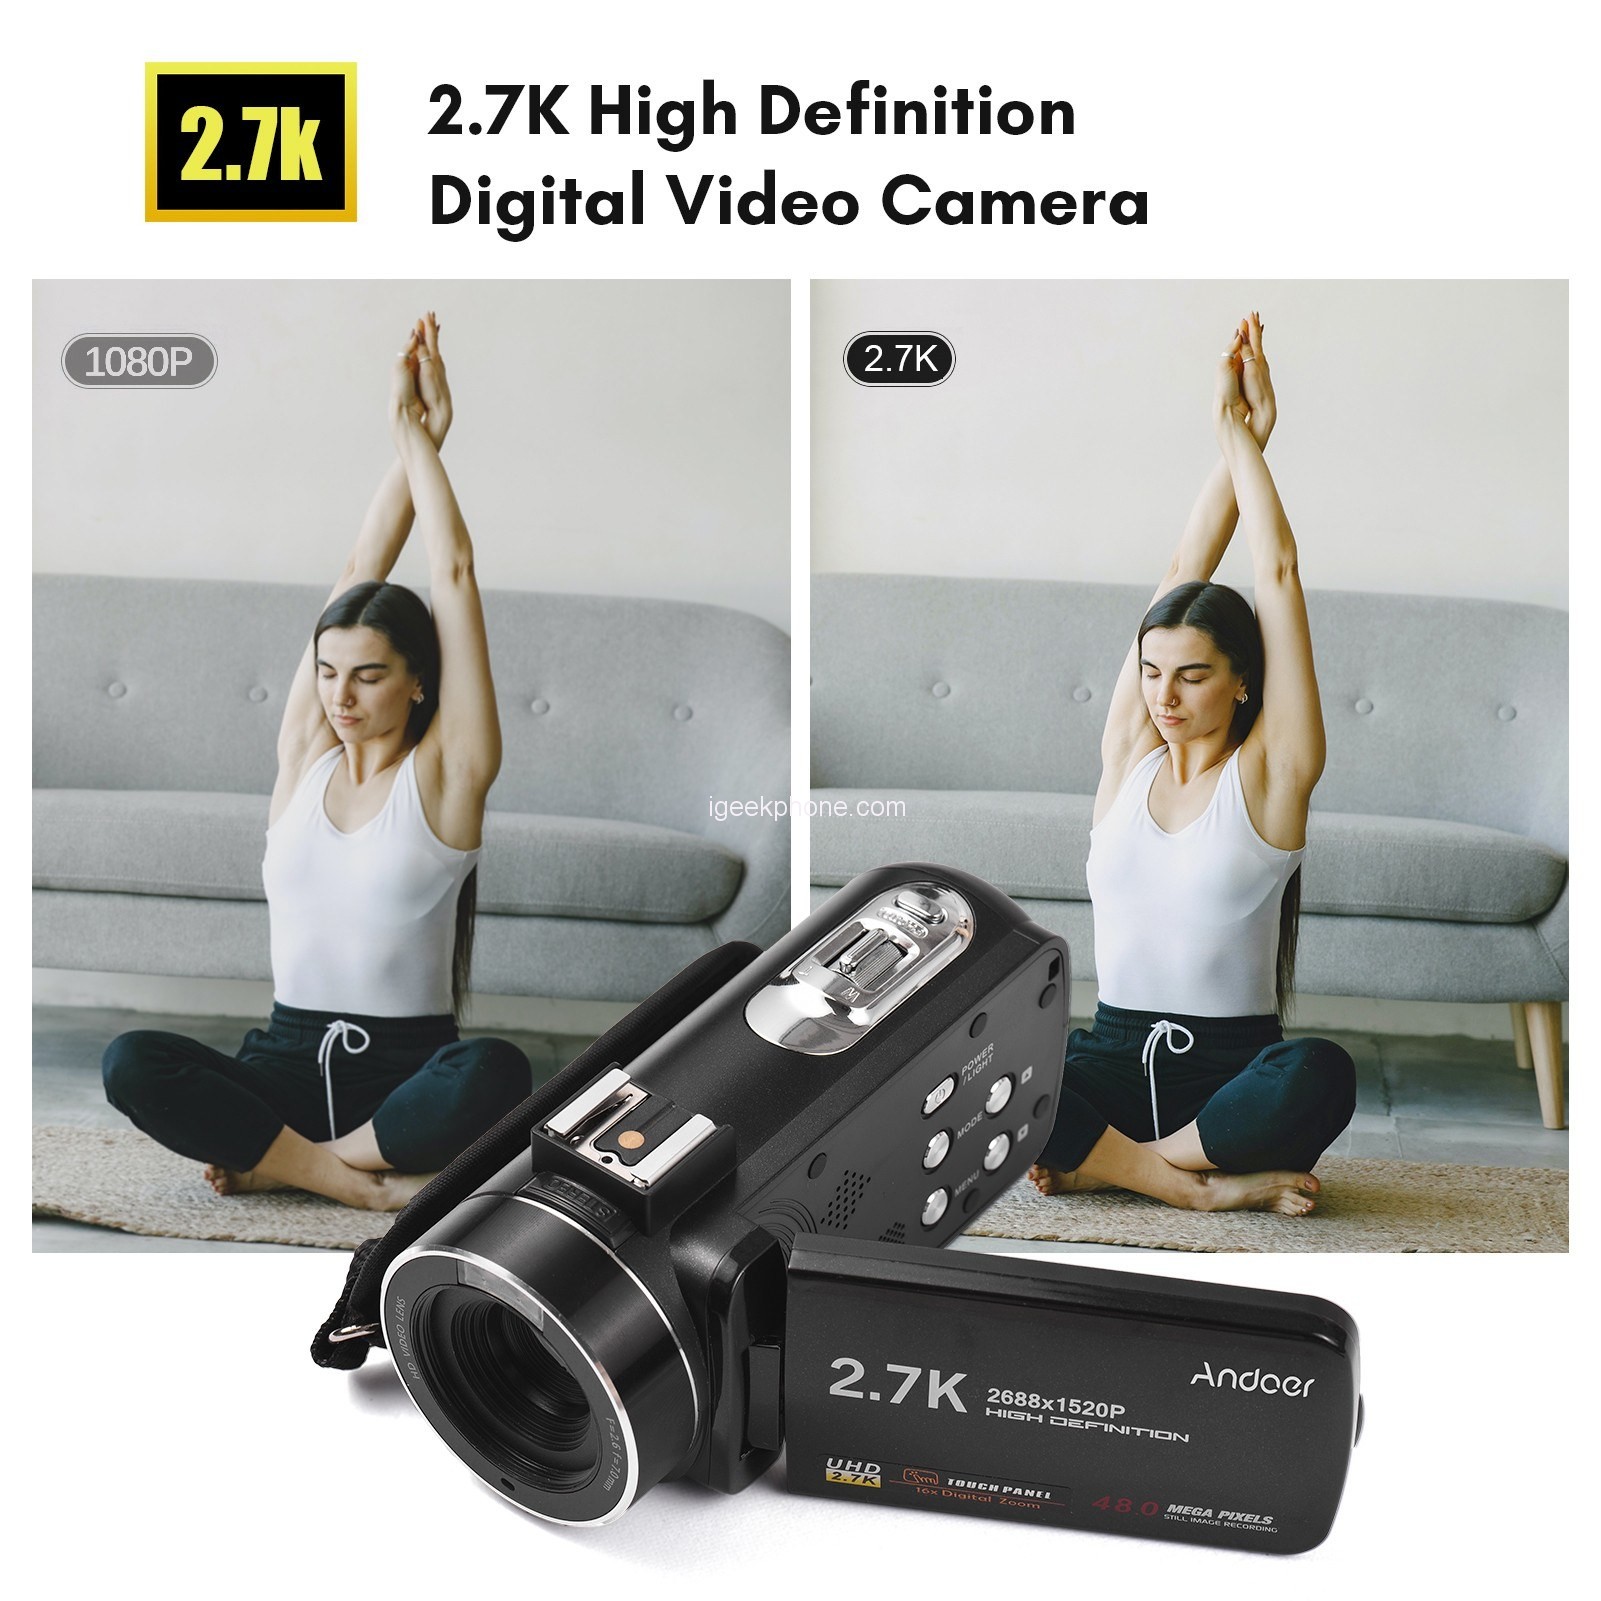 Andoer 2.7K Digital Video Camera